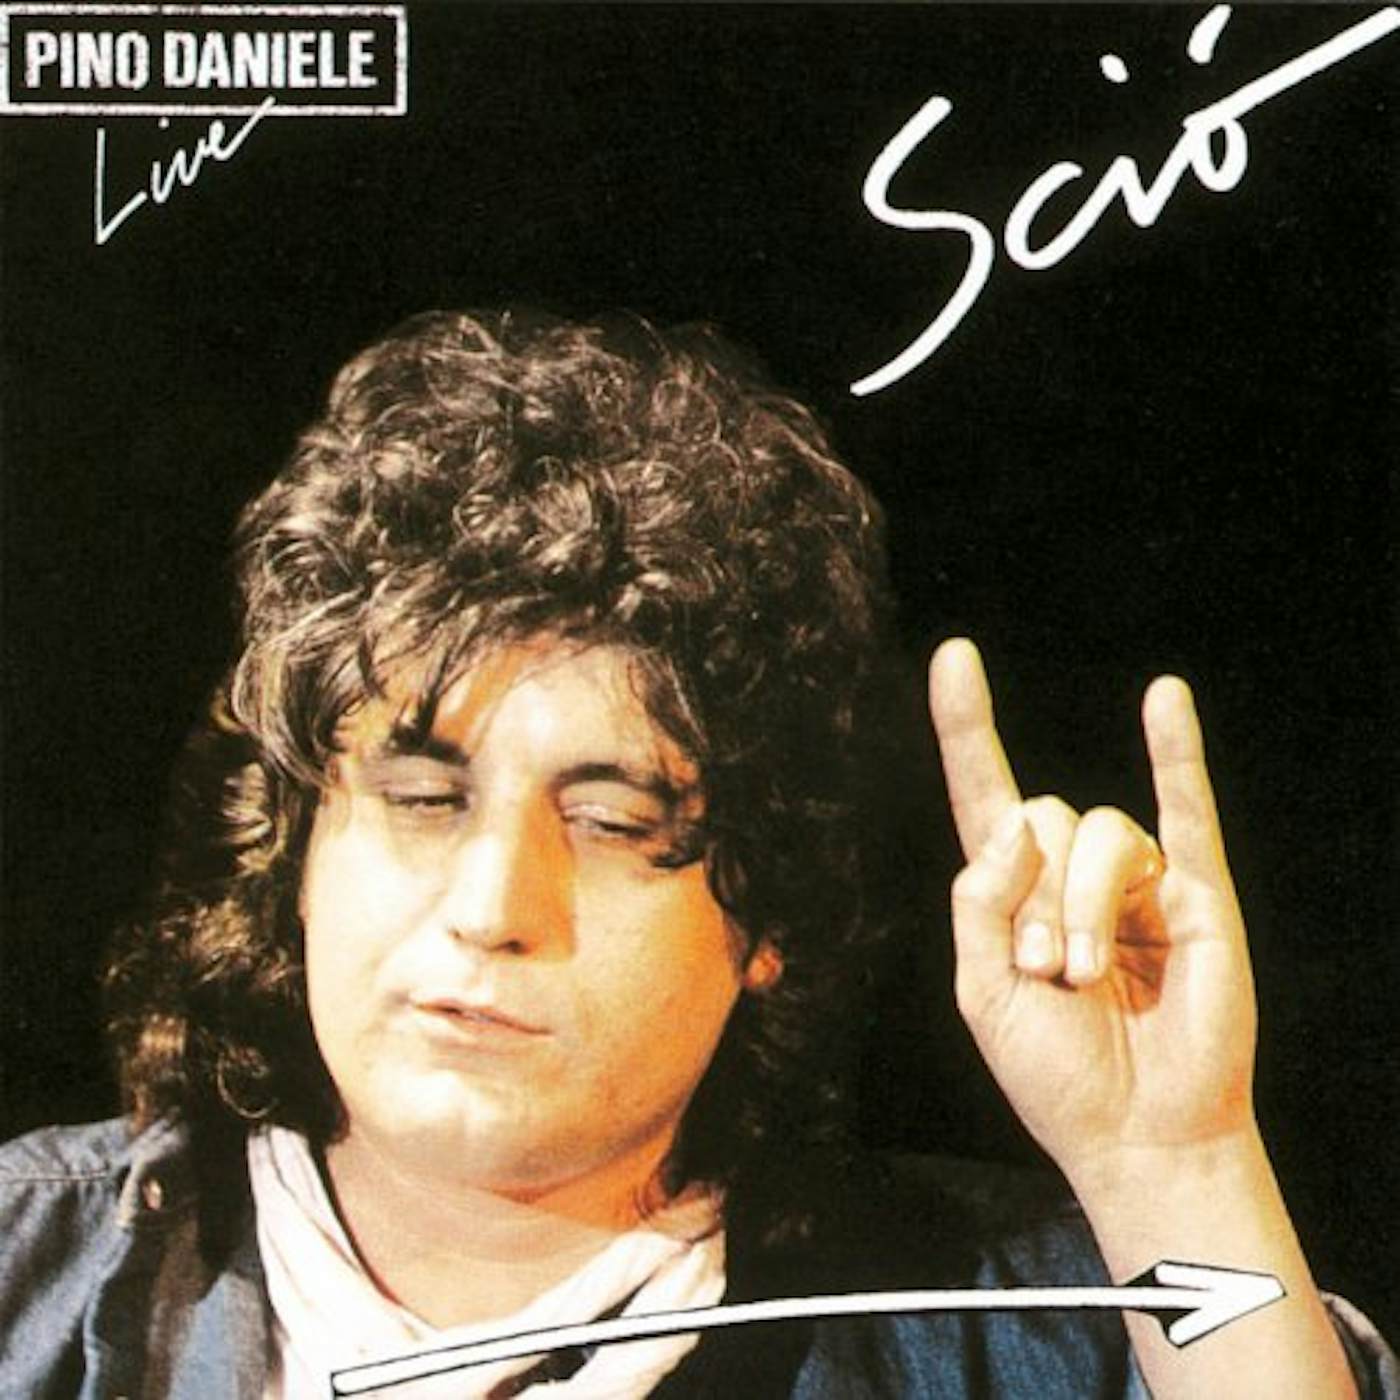 Pino Daniele SCIO LIVE Vinyl Record